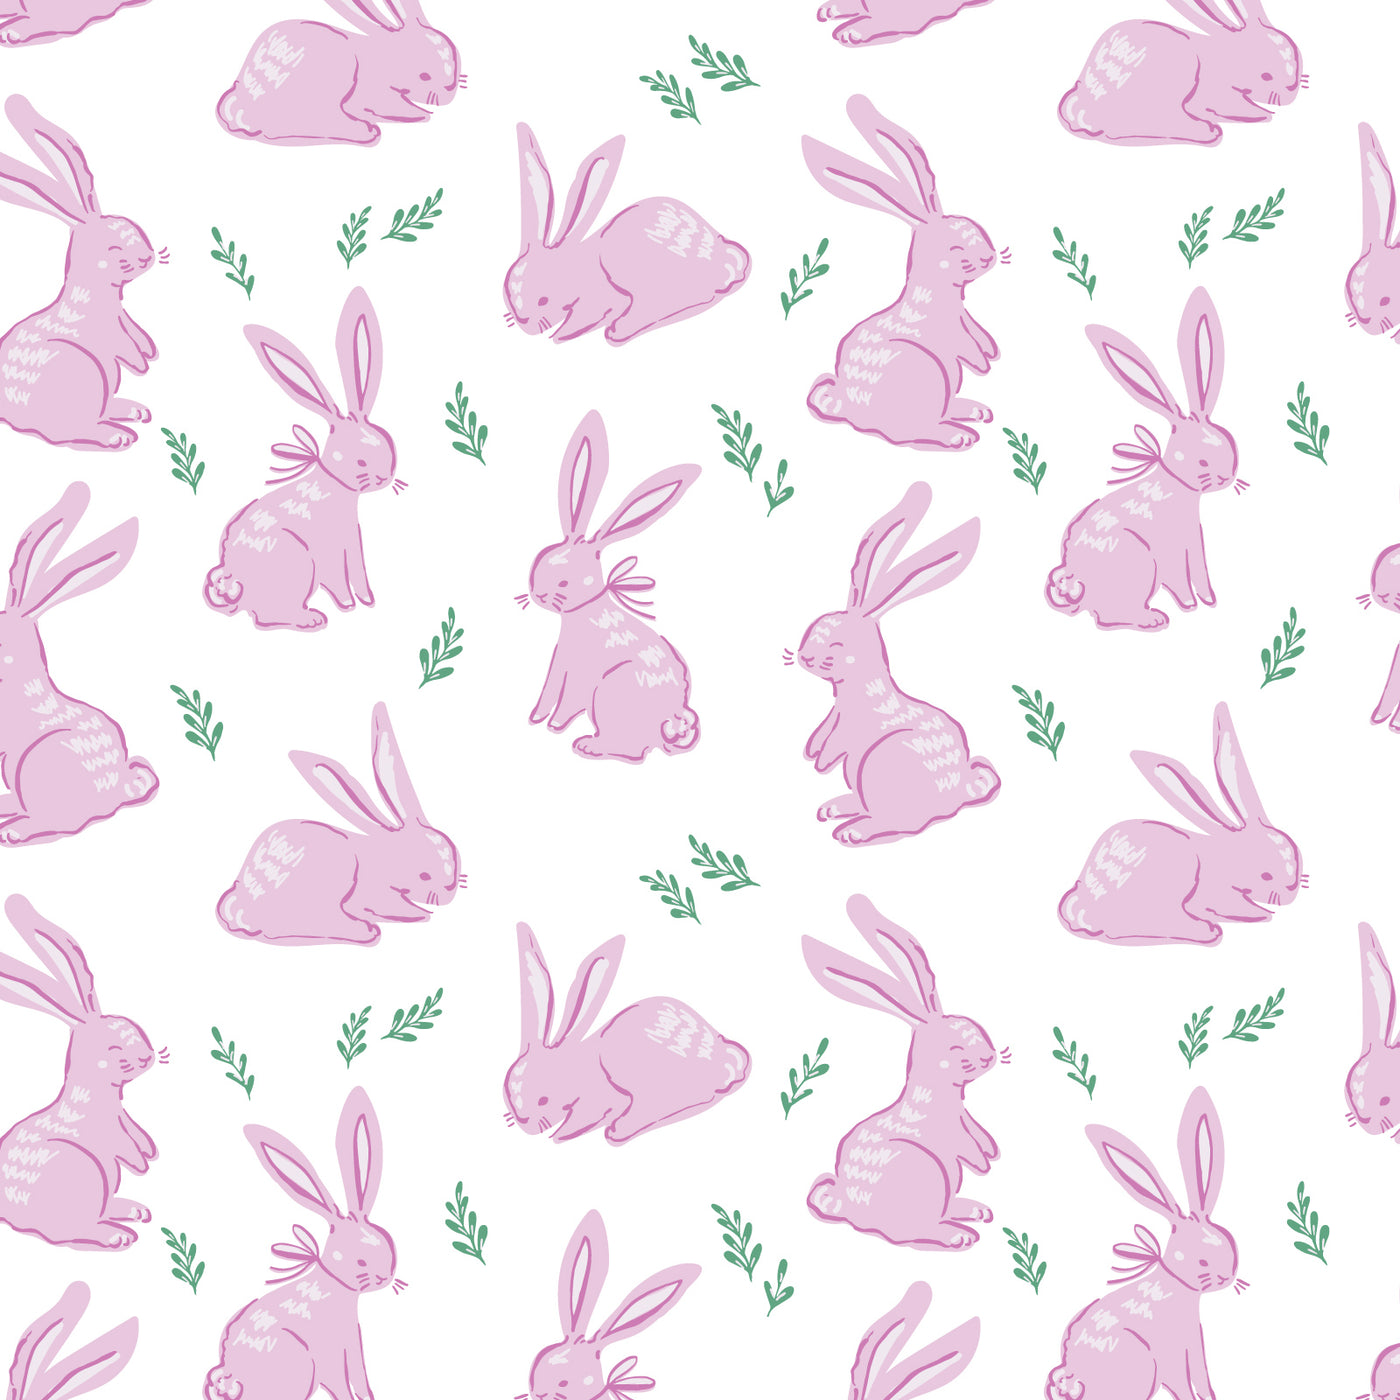 Parker - Bunny Hop Pink